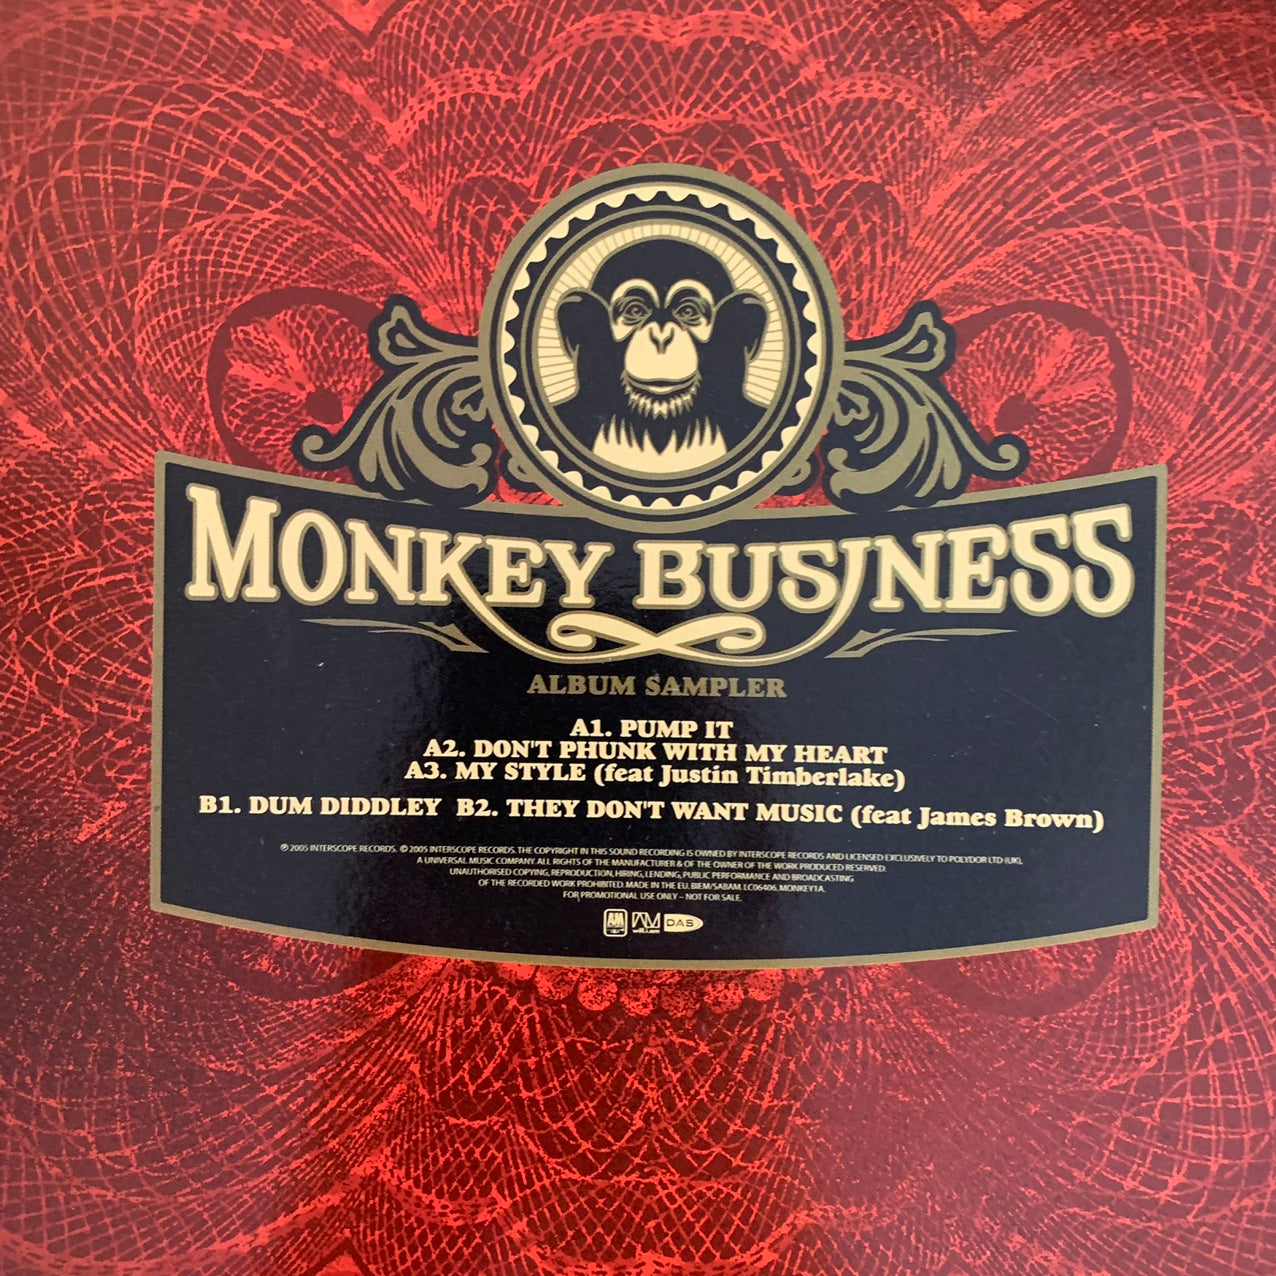 The Black Eyed Peas “Monkey Business” 12inch Vinyl Album Sampler